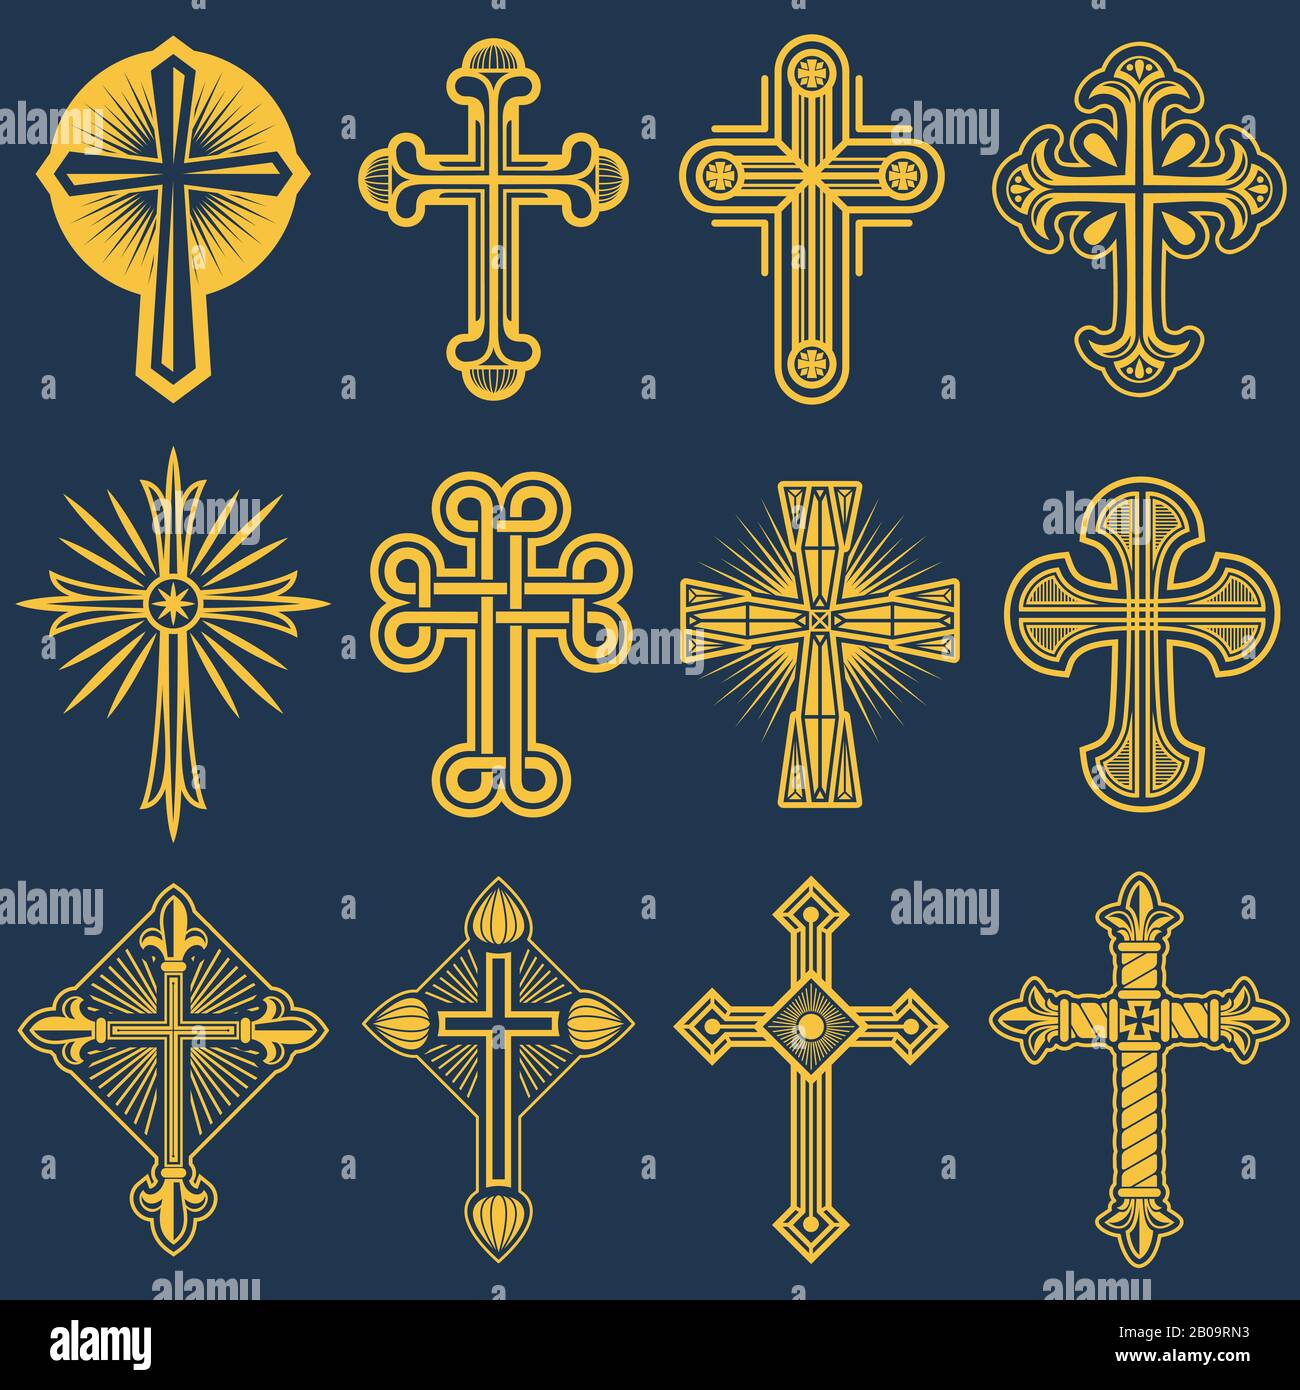 Croce cattolica immagini e fotografie stock ad alta risoluzione - Alamy